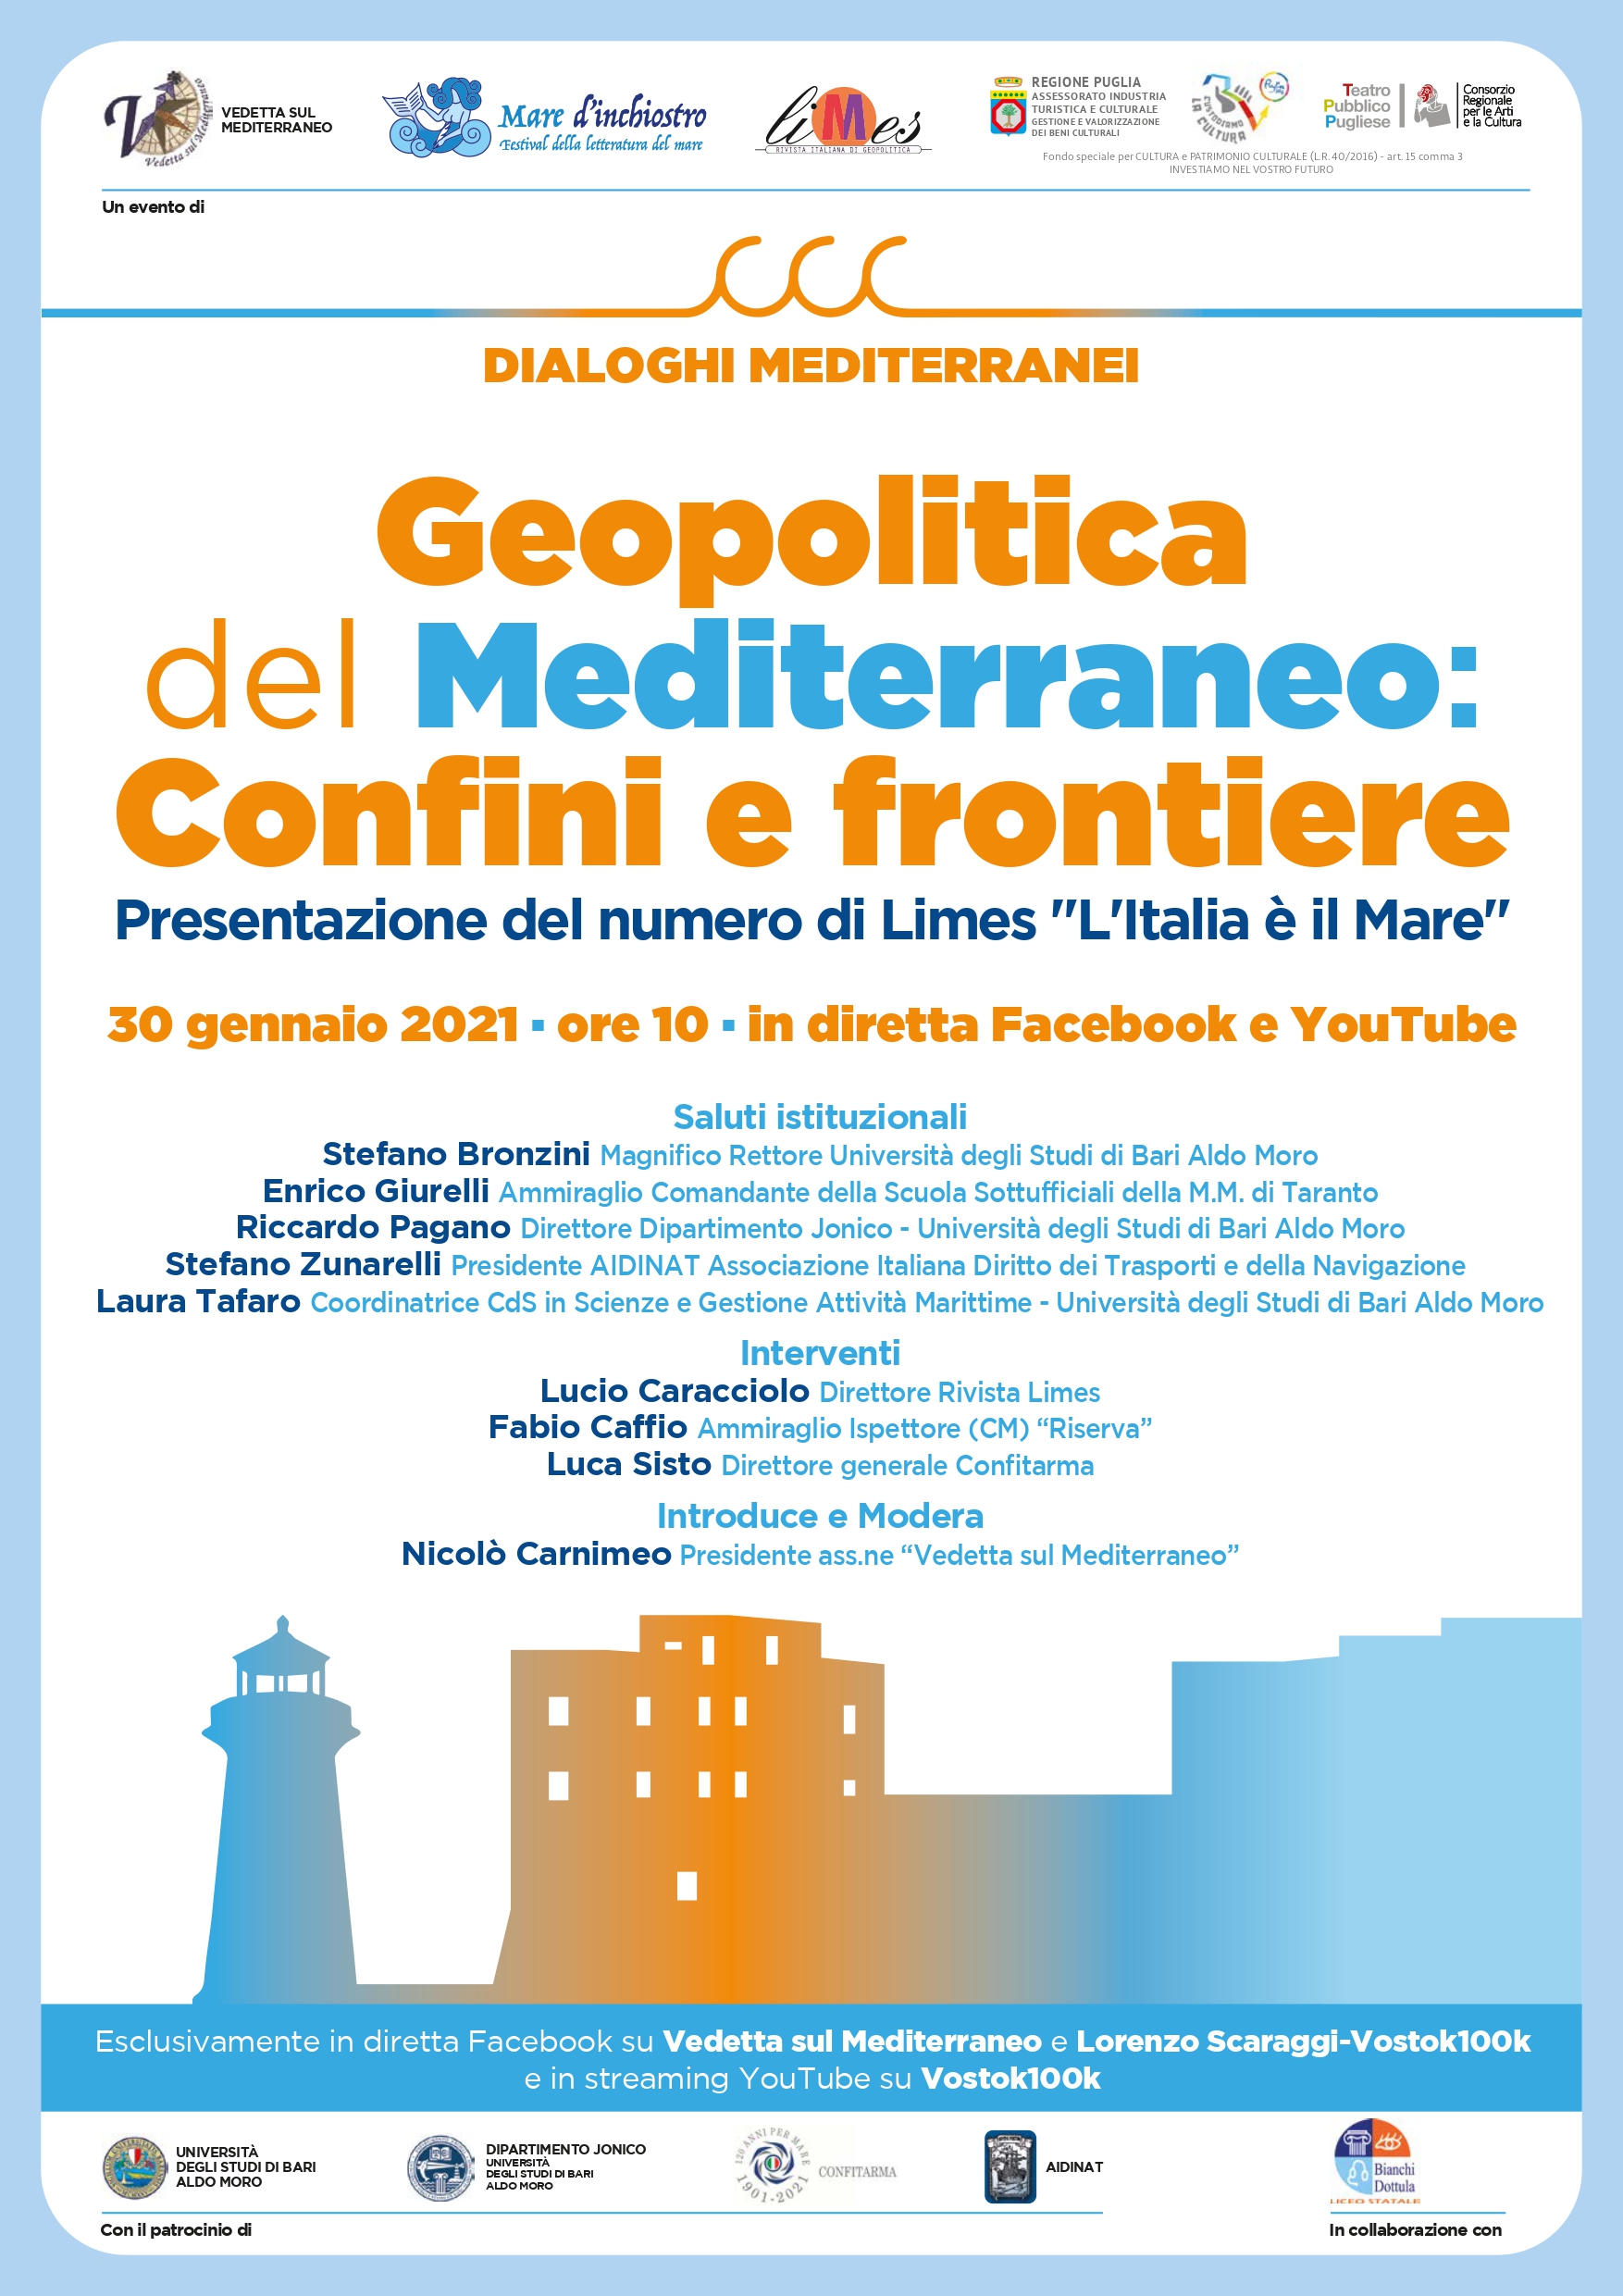 Scenari possibili della geopolitica del Mediterraneo durante l’incontro promosso dalla rassegna “Dialoghi Mediterranei”